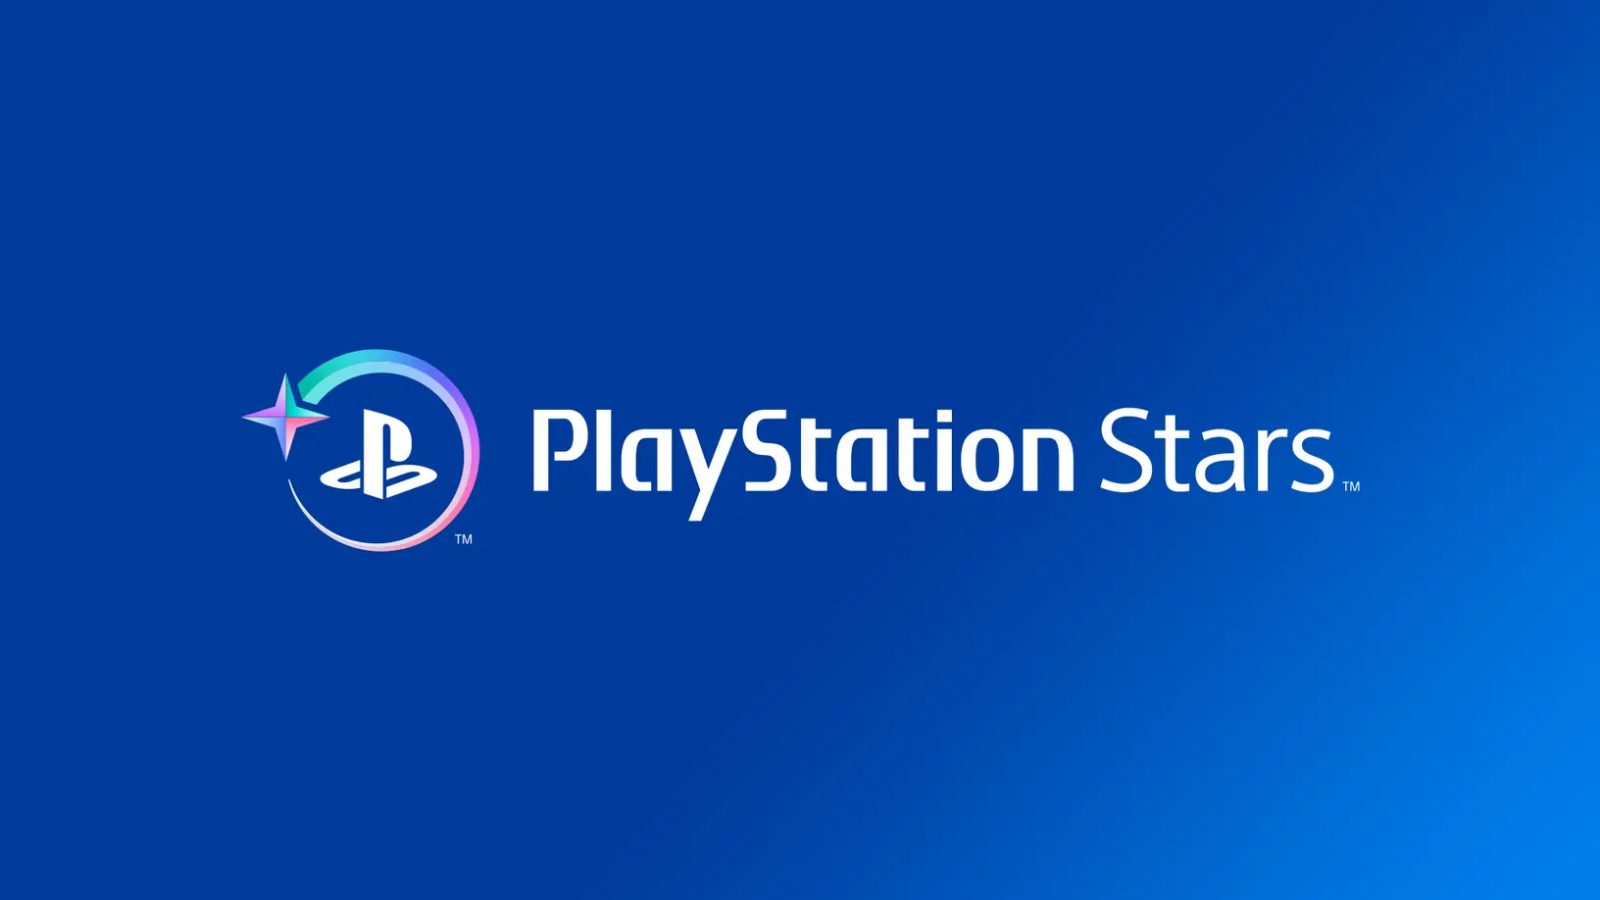 Sony представила первый вид цифровых коллекционных предметов из программы лояльности PlayStation Stars